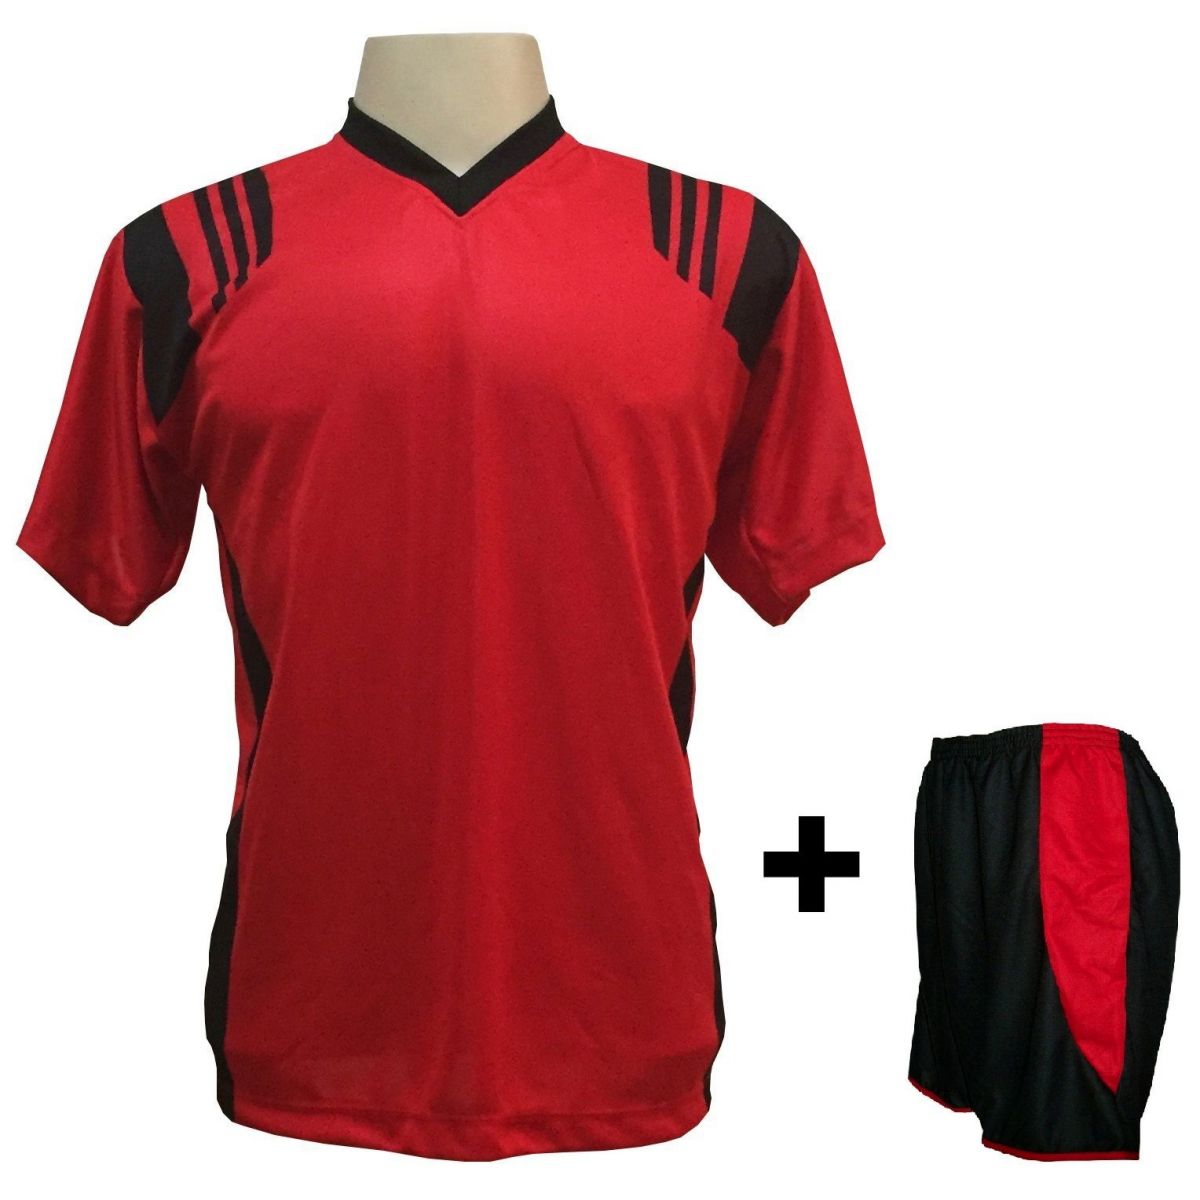 Uniforme Esportivo com 12 camisas modelo Roma Vermelho/Preto + 12 calções modelo Copa + 1 Goleiro + Brindes